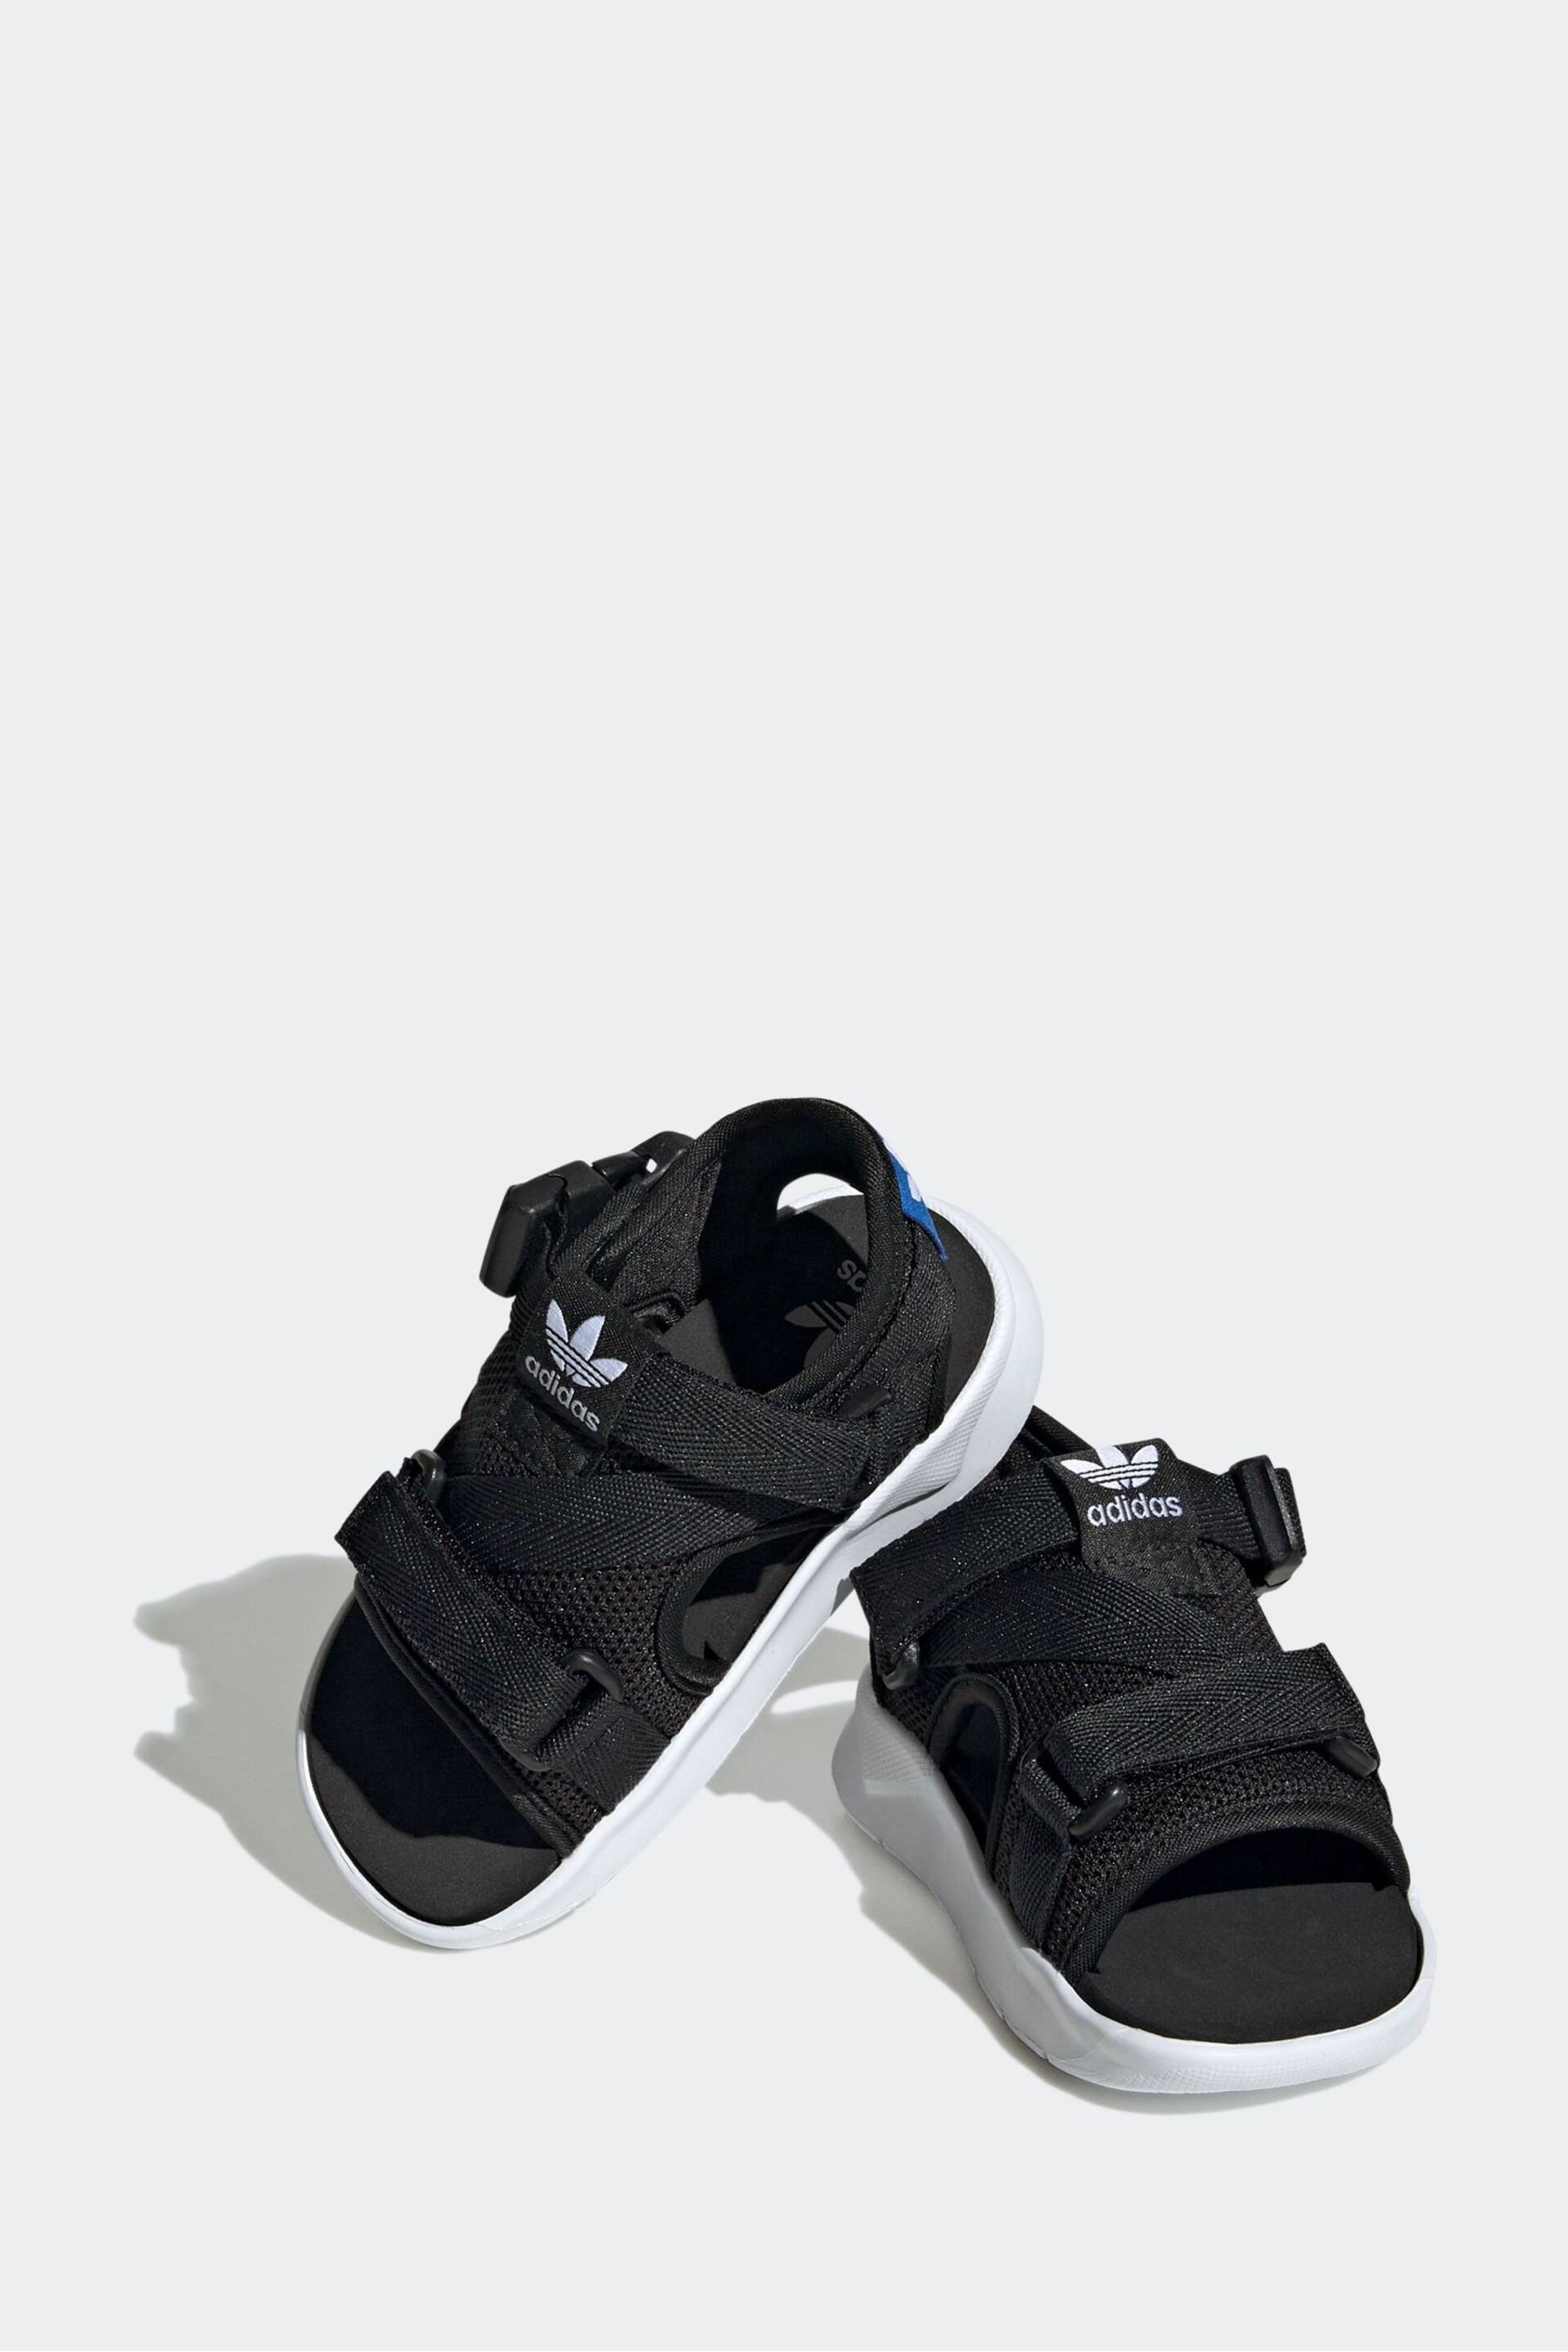 adidas Originals 360 3.0 Black Sandals - Image 4 of 9